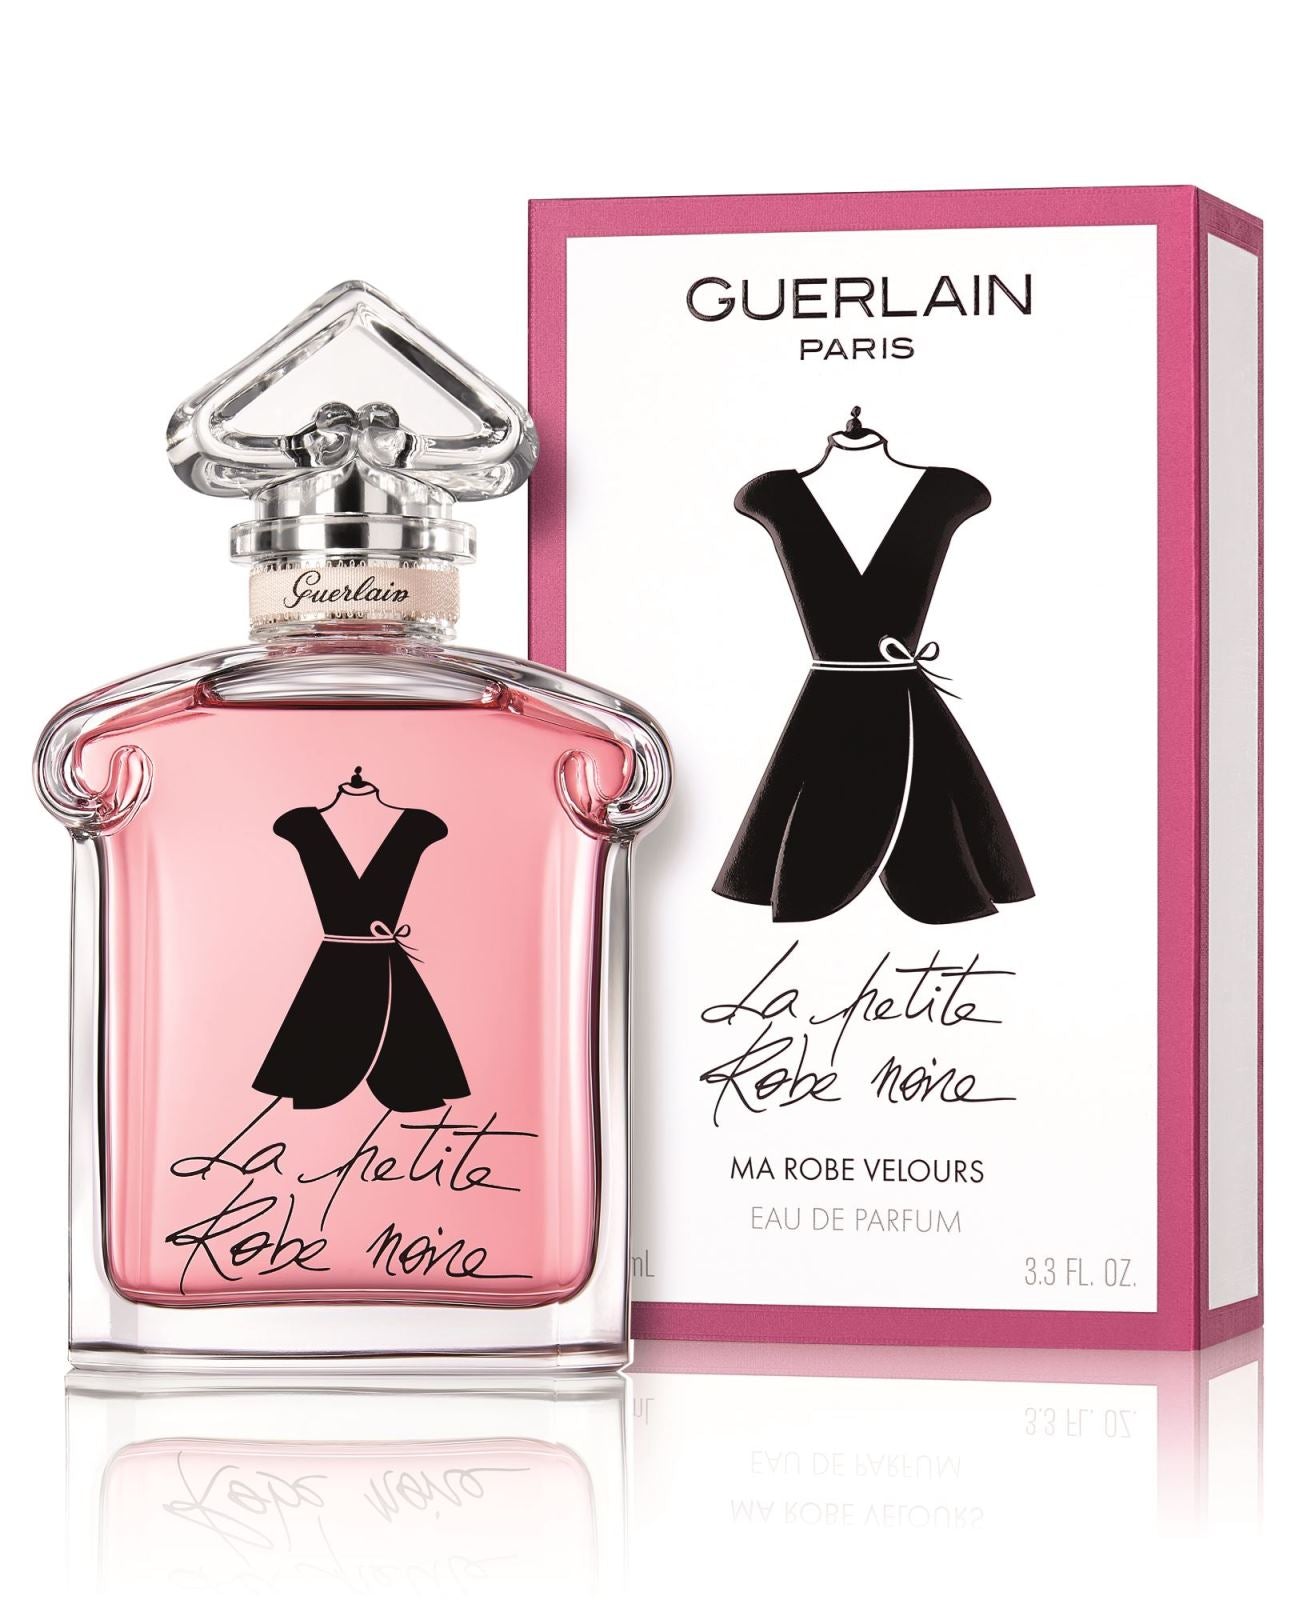 La Petite Robe Noire by Guerlain 3.3 fl.oz Eau De Parfum Spray for Women